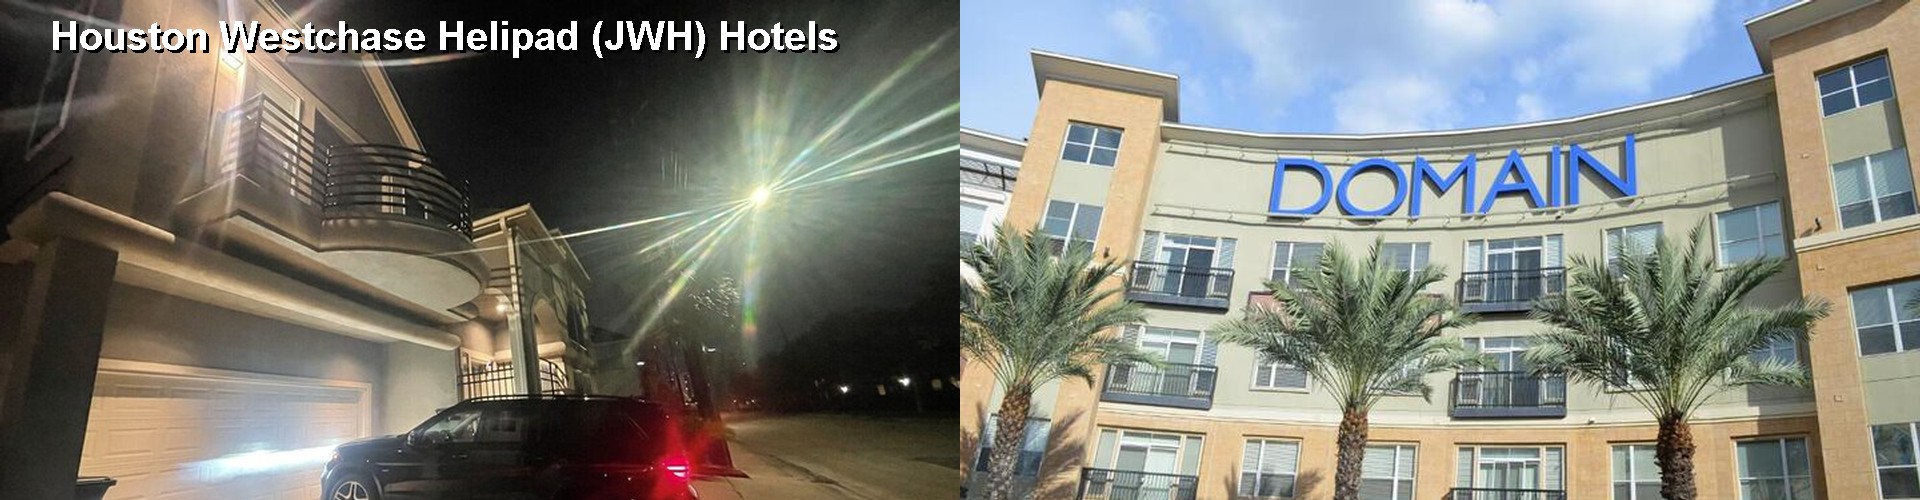 4 Best Hotels near Houston Westchase Helipad (JWH)